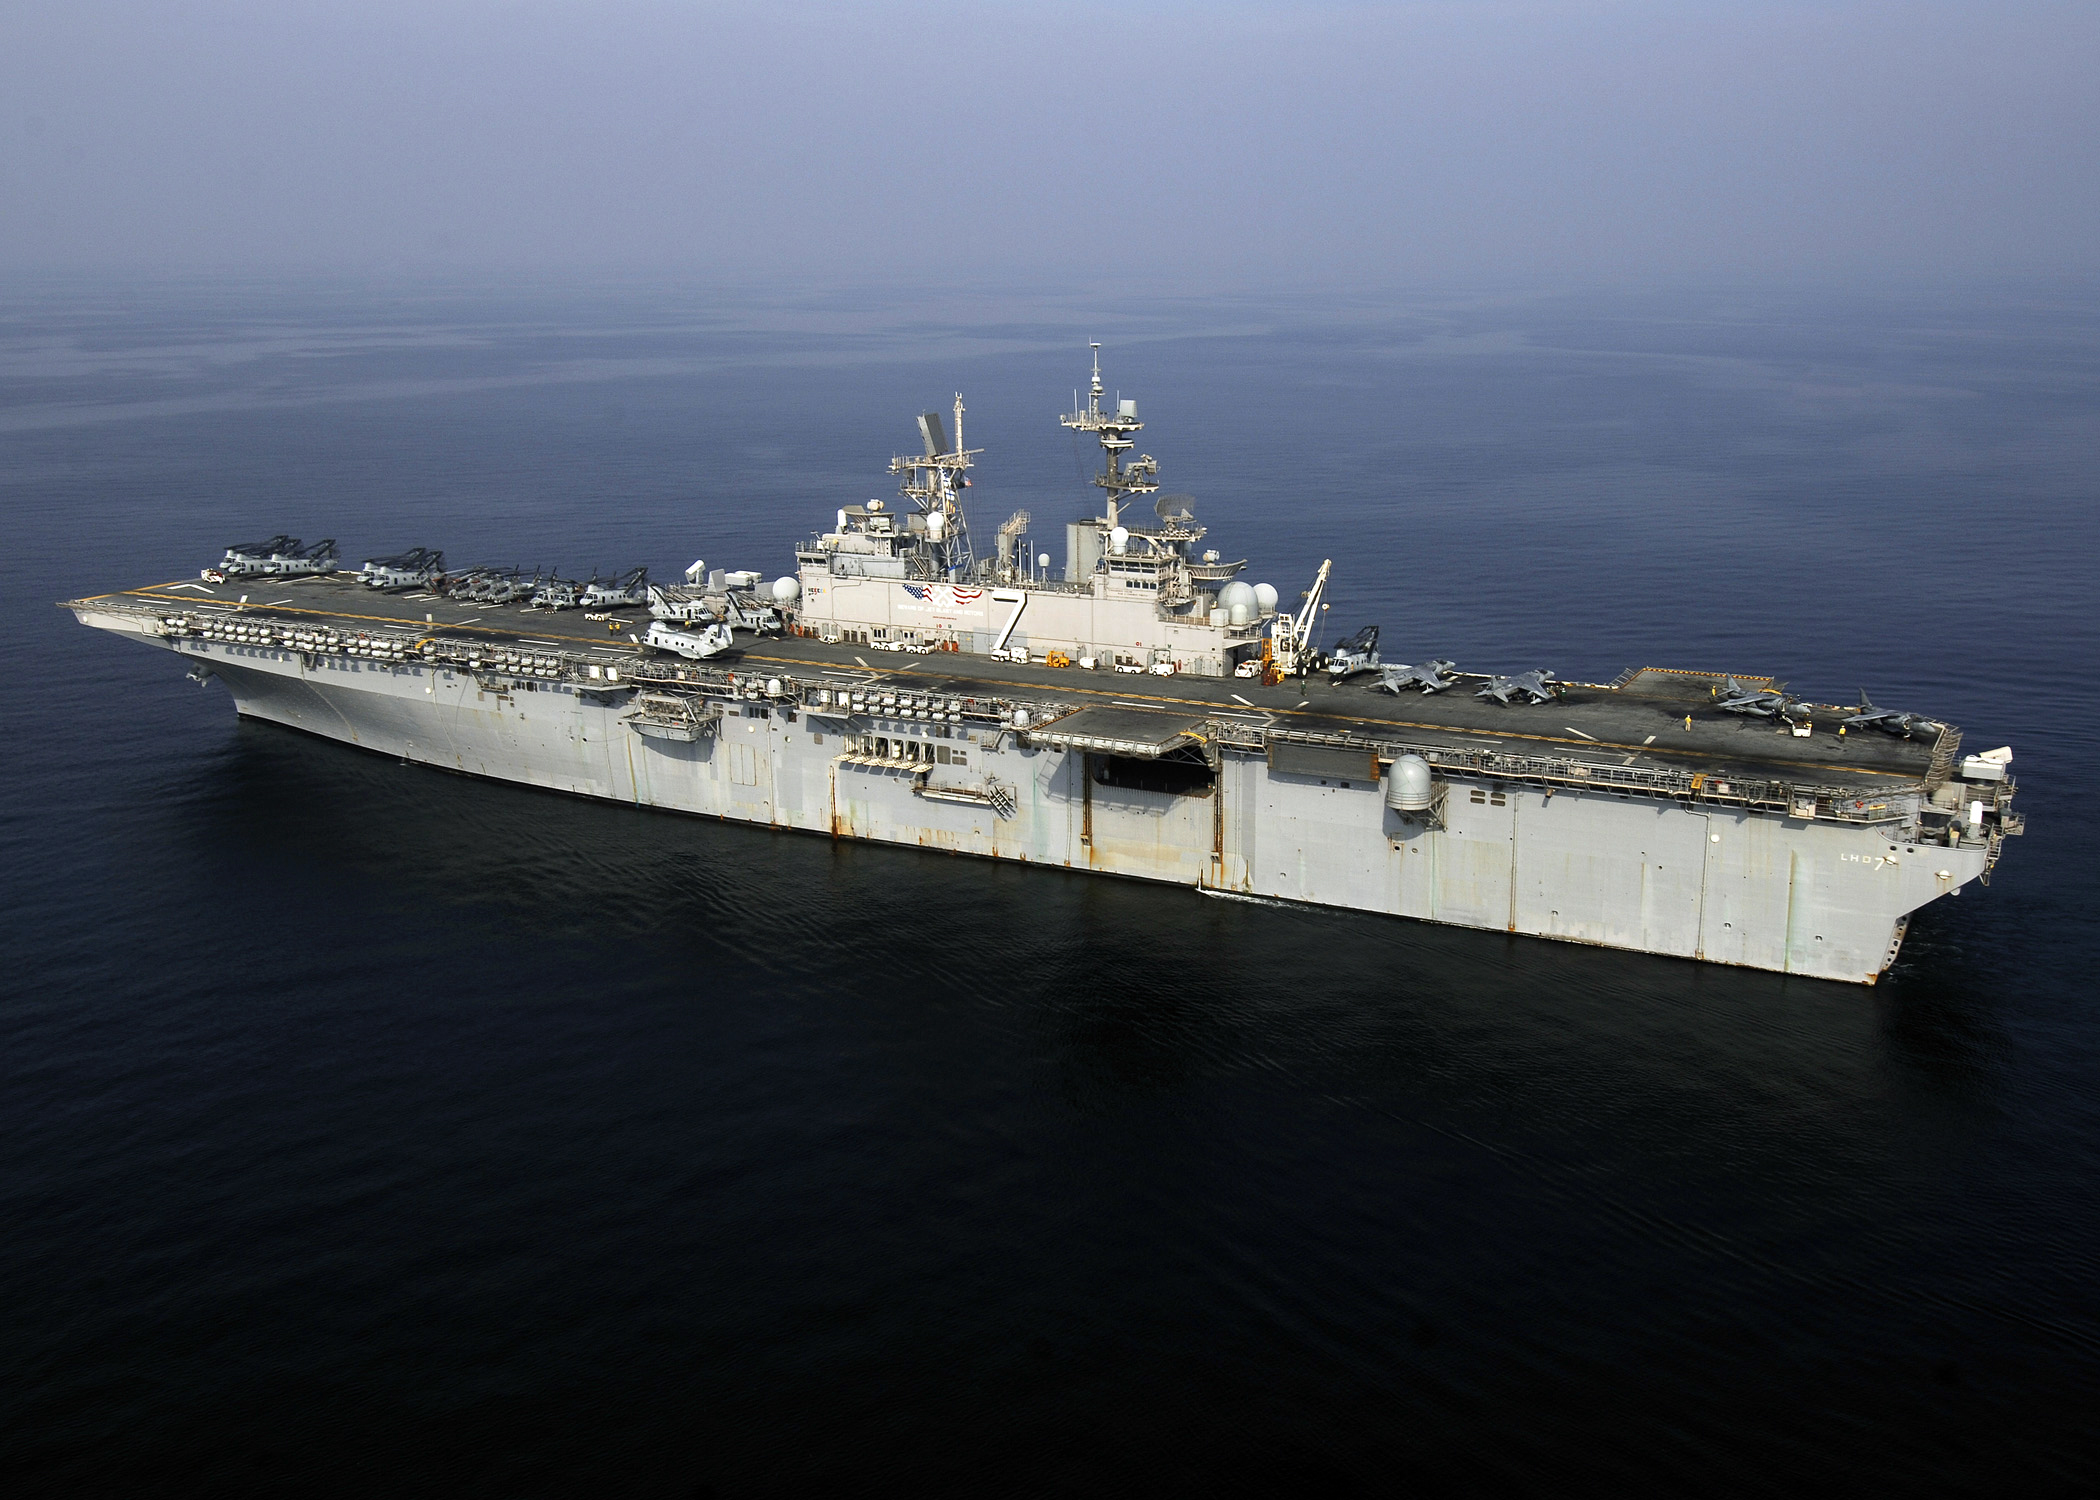 The USS Iwo Jima